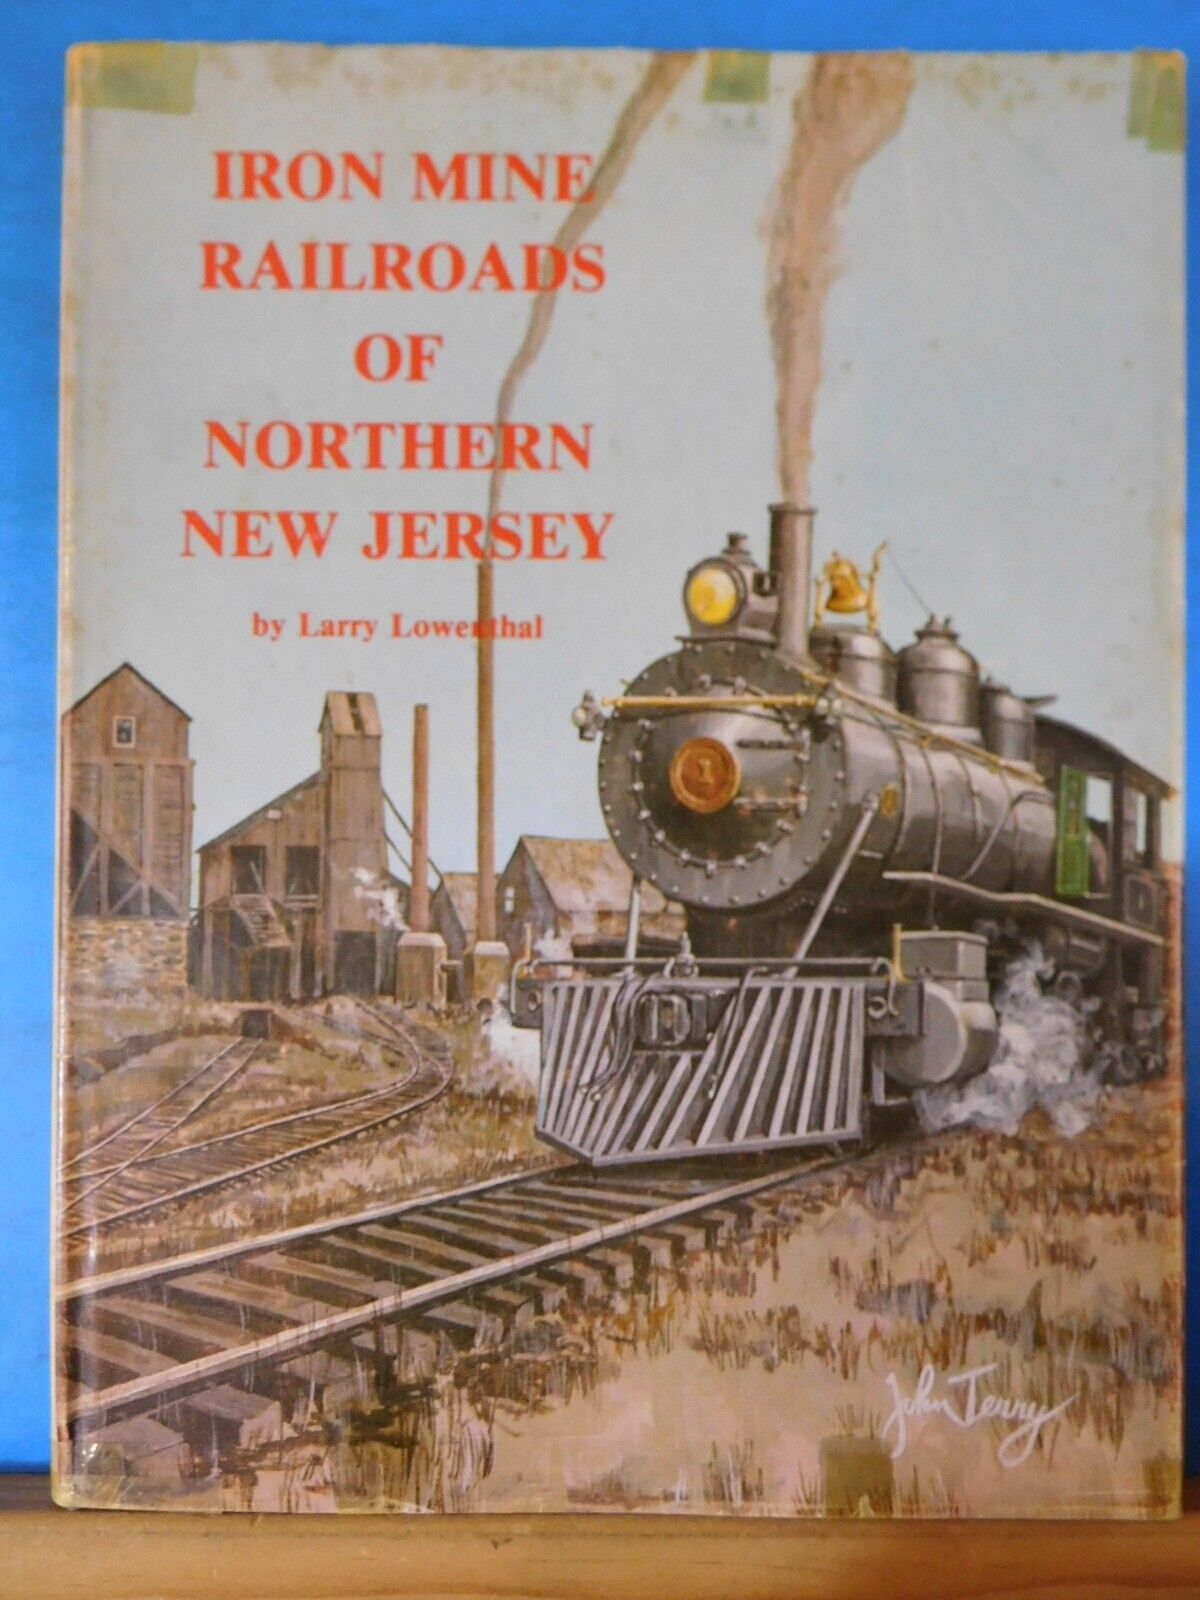 Iron Mine Railroads of Northern New Jersey by Larry Lowenthal Popularna, popularna wyprzedaż